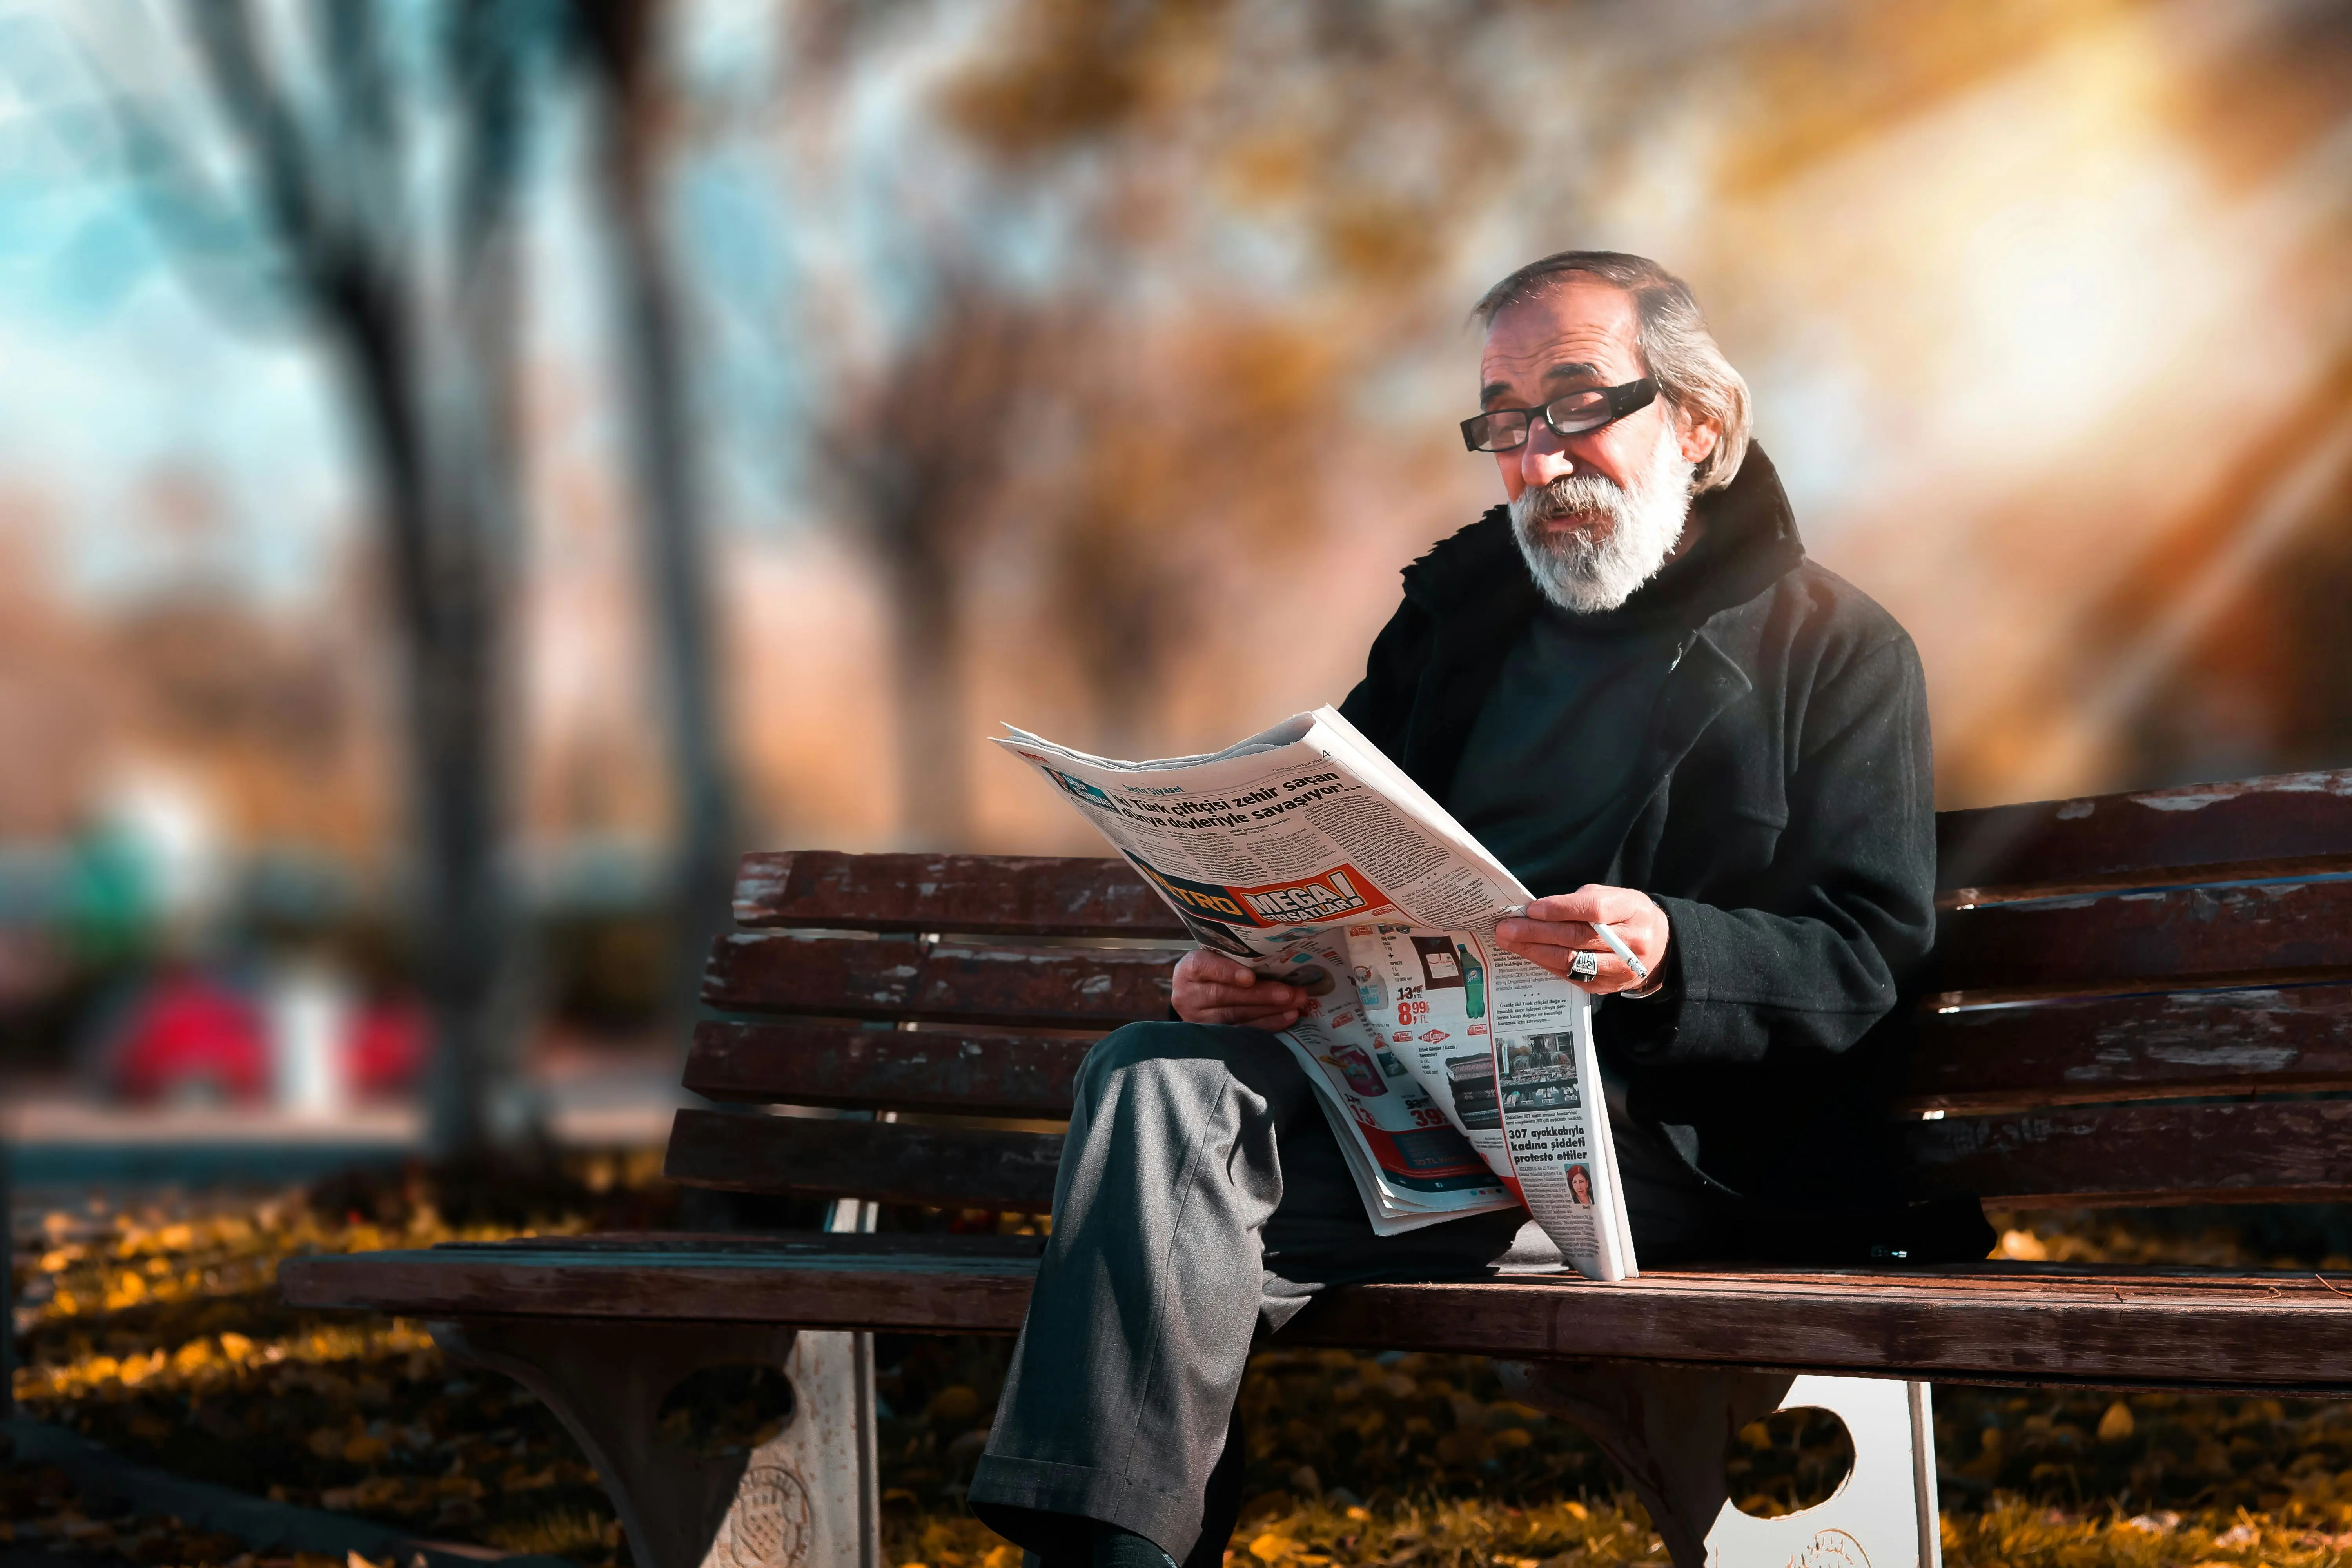 شخص كبير السن يجلس على أريكة ويقرأ الجريدة. 
